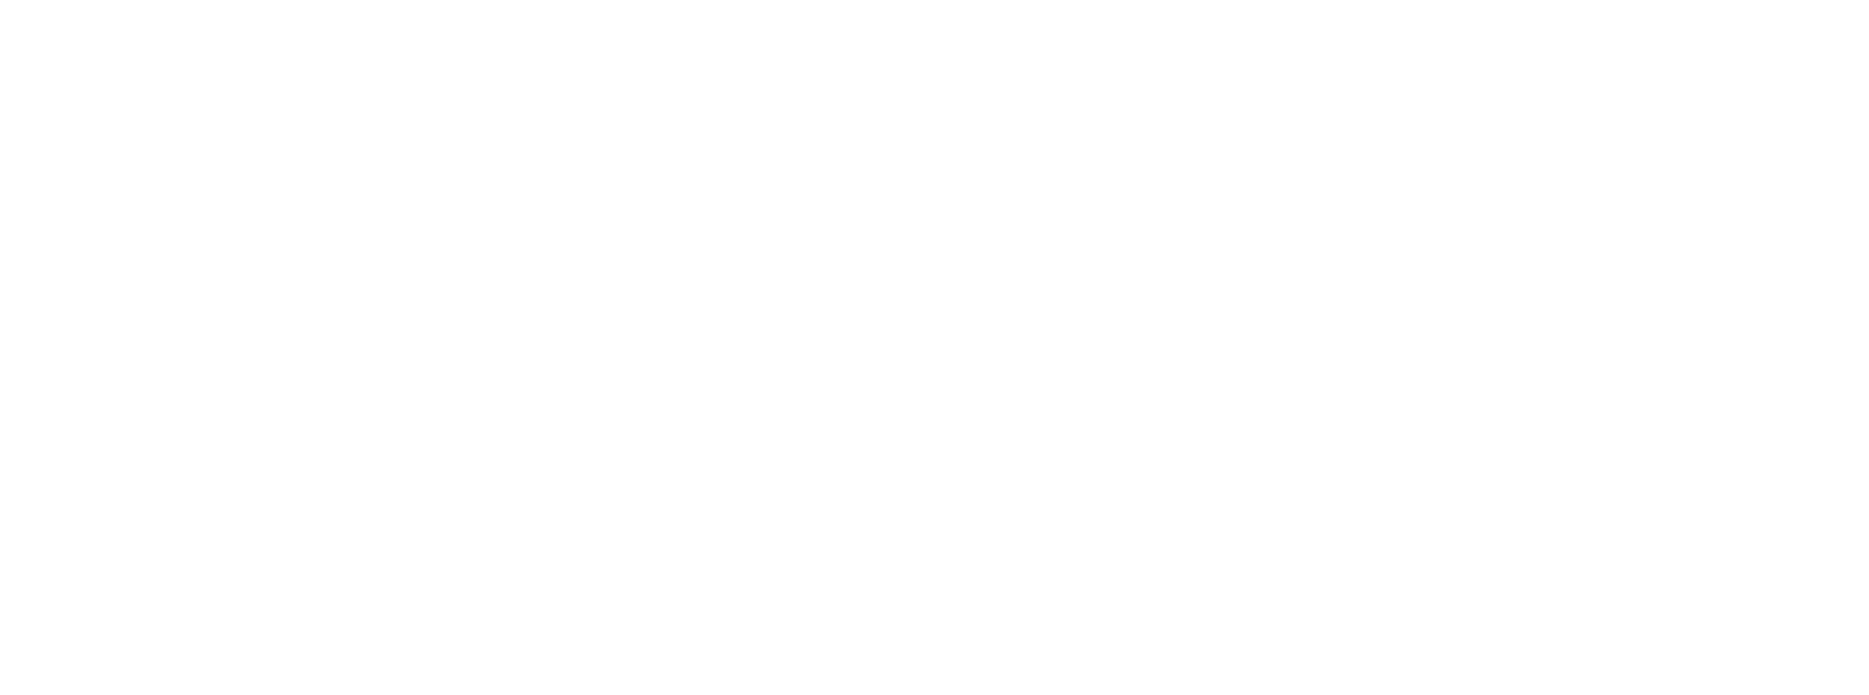 Lear logo